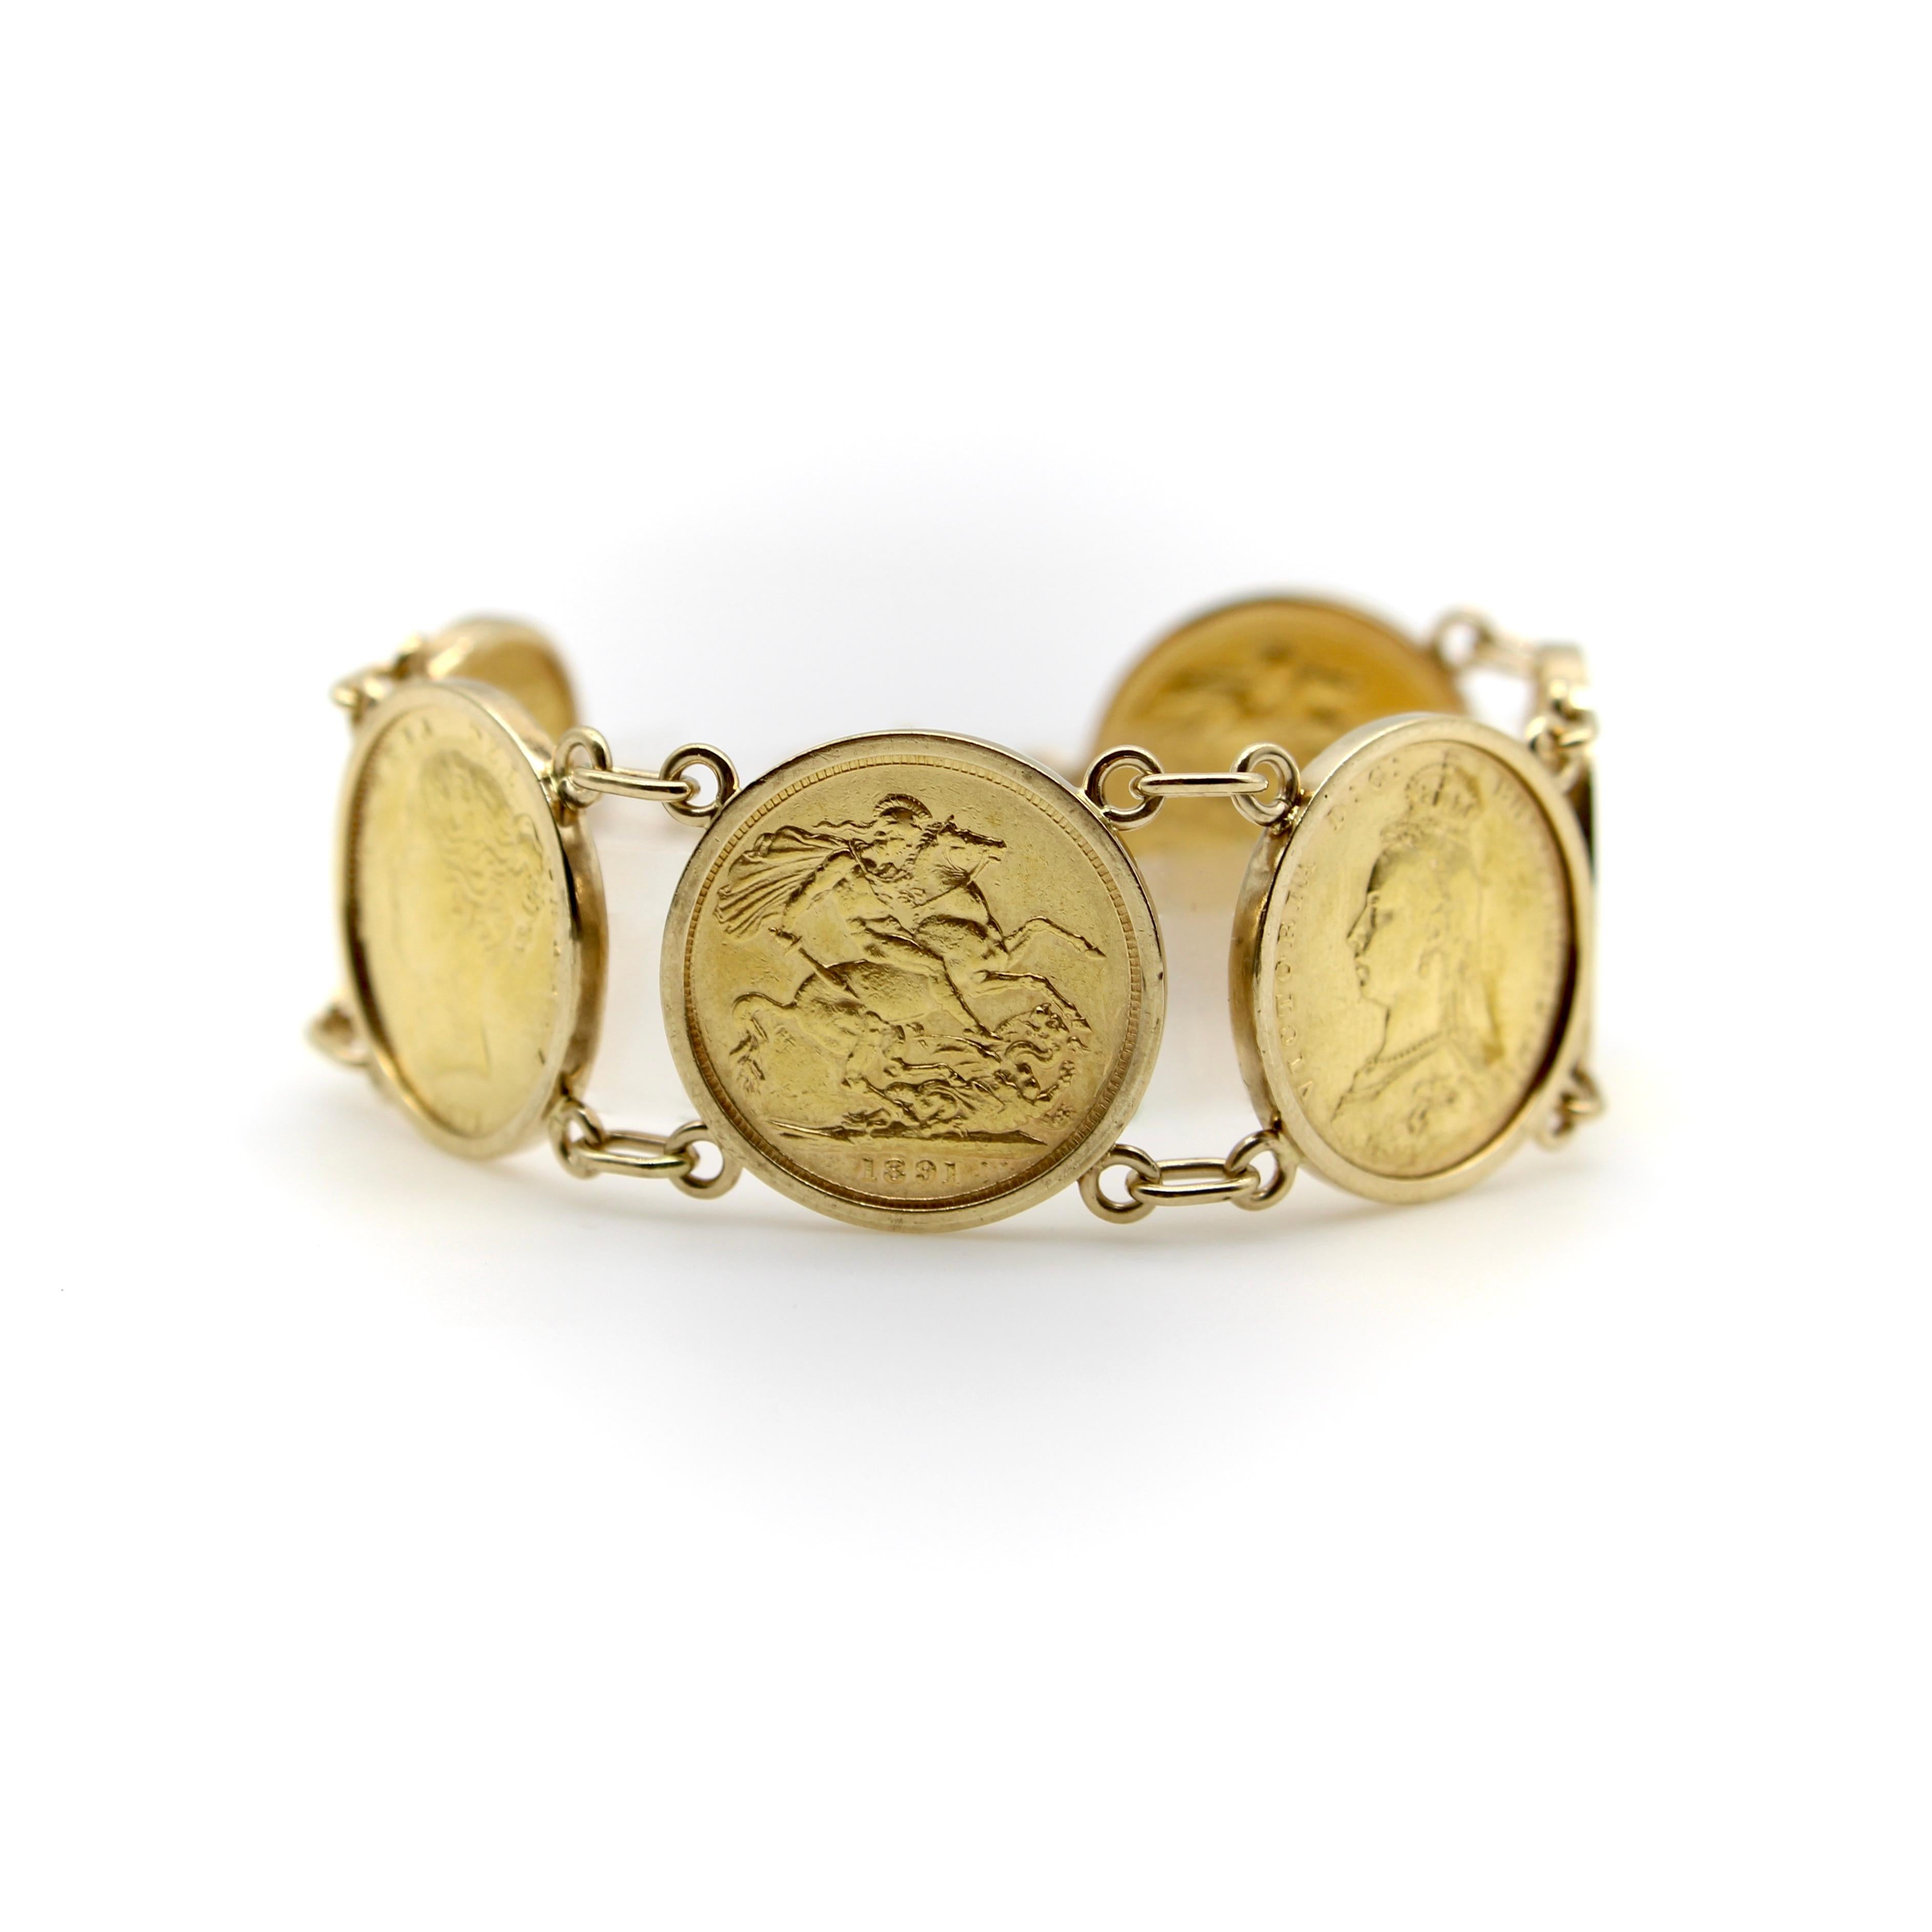 Dieses Armband aus 22-karätigem Gold zeigt sechs britische Sovereigns in 10-karätigem Gold, die mit doppelten Schlaufen und einem Federringverschluss verbunden sind. Die Münzen stammen aus den Jahren 1877 bis 1900 und zeigen jeweils das Porträt von